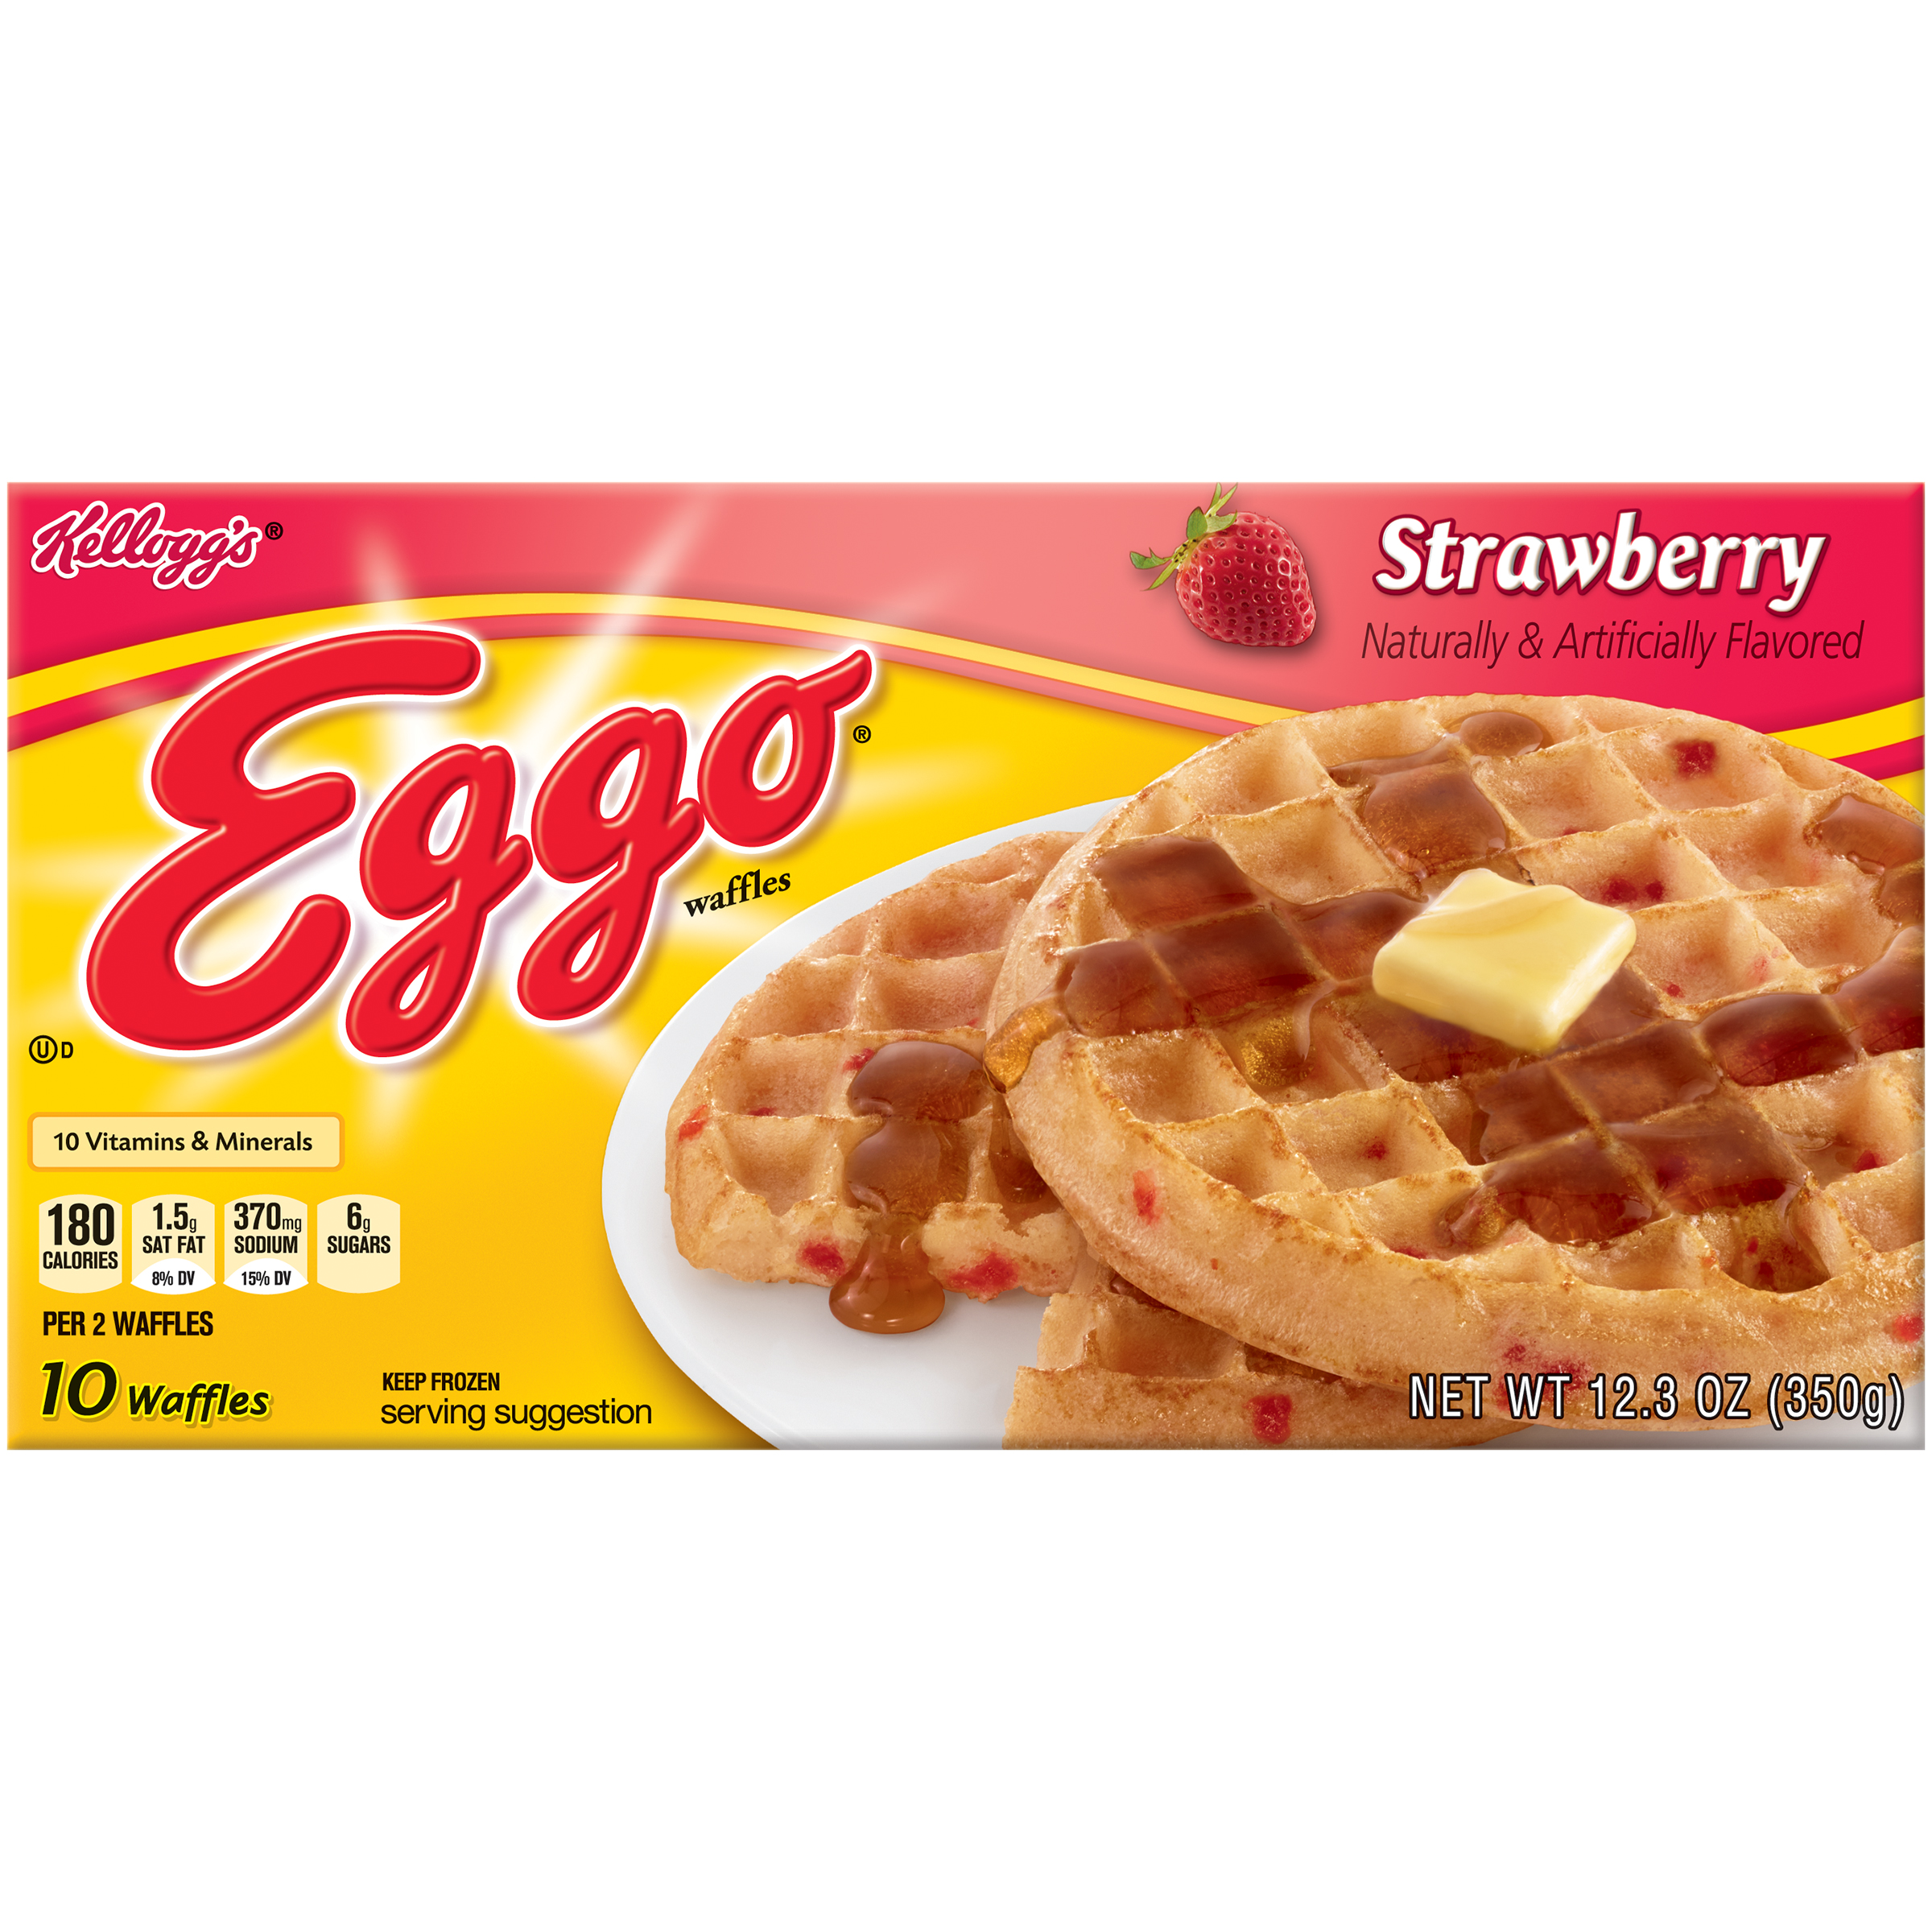 UPC 038000403408 product image for Eggo Strawberry Waffles 12.3 OZ BOX upci...